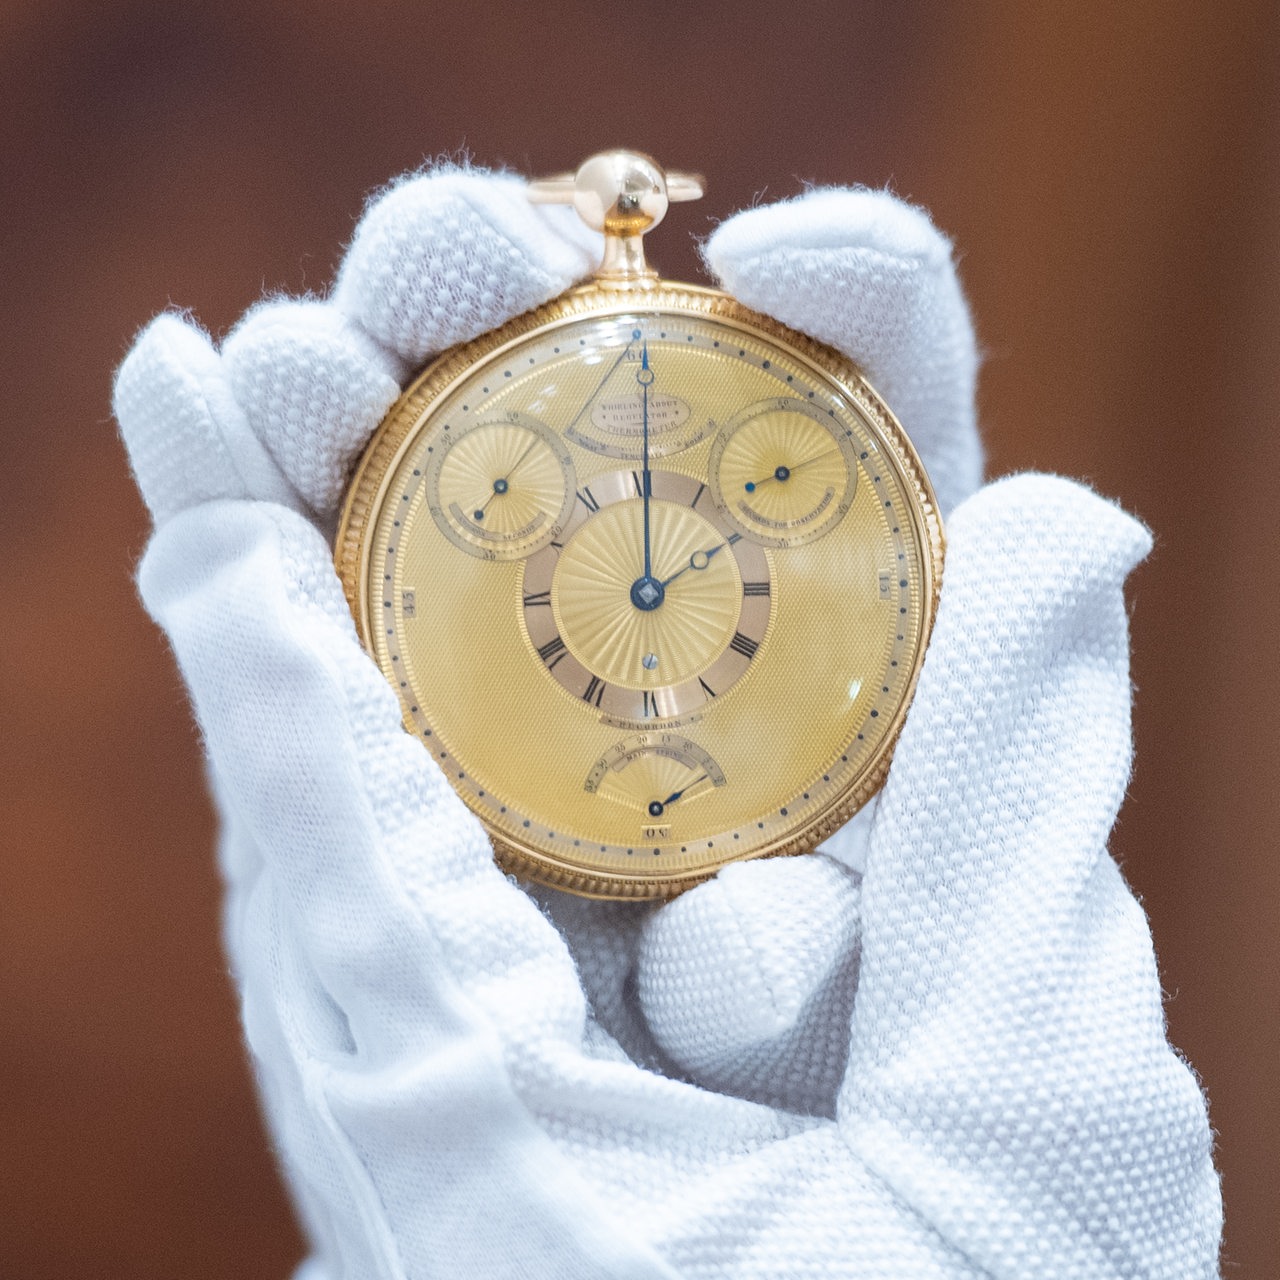 Die Uhr von König George III, hergestellt von Abraham-Louis Breguet